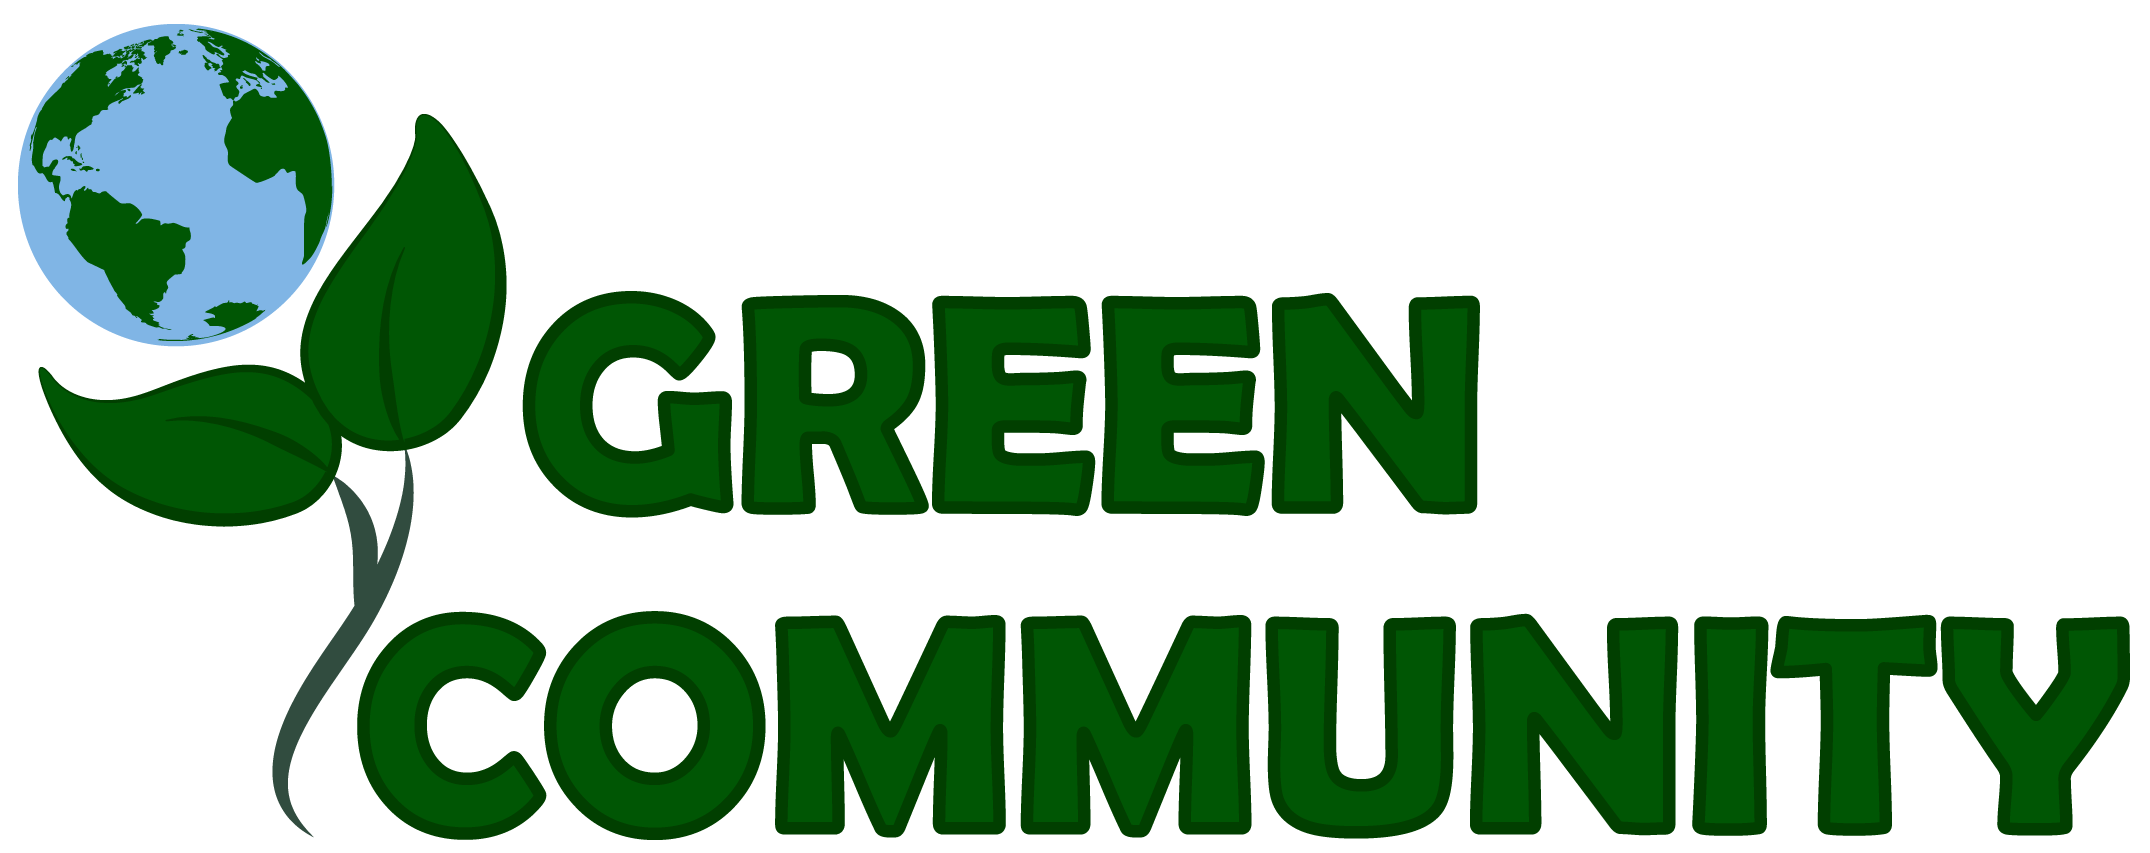 MSHA Logo - MSHA Green Community UK